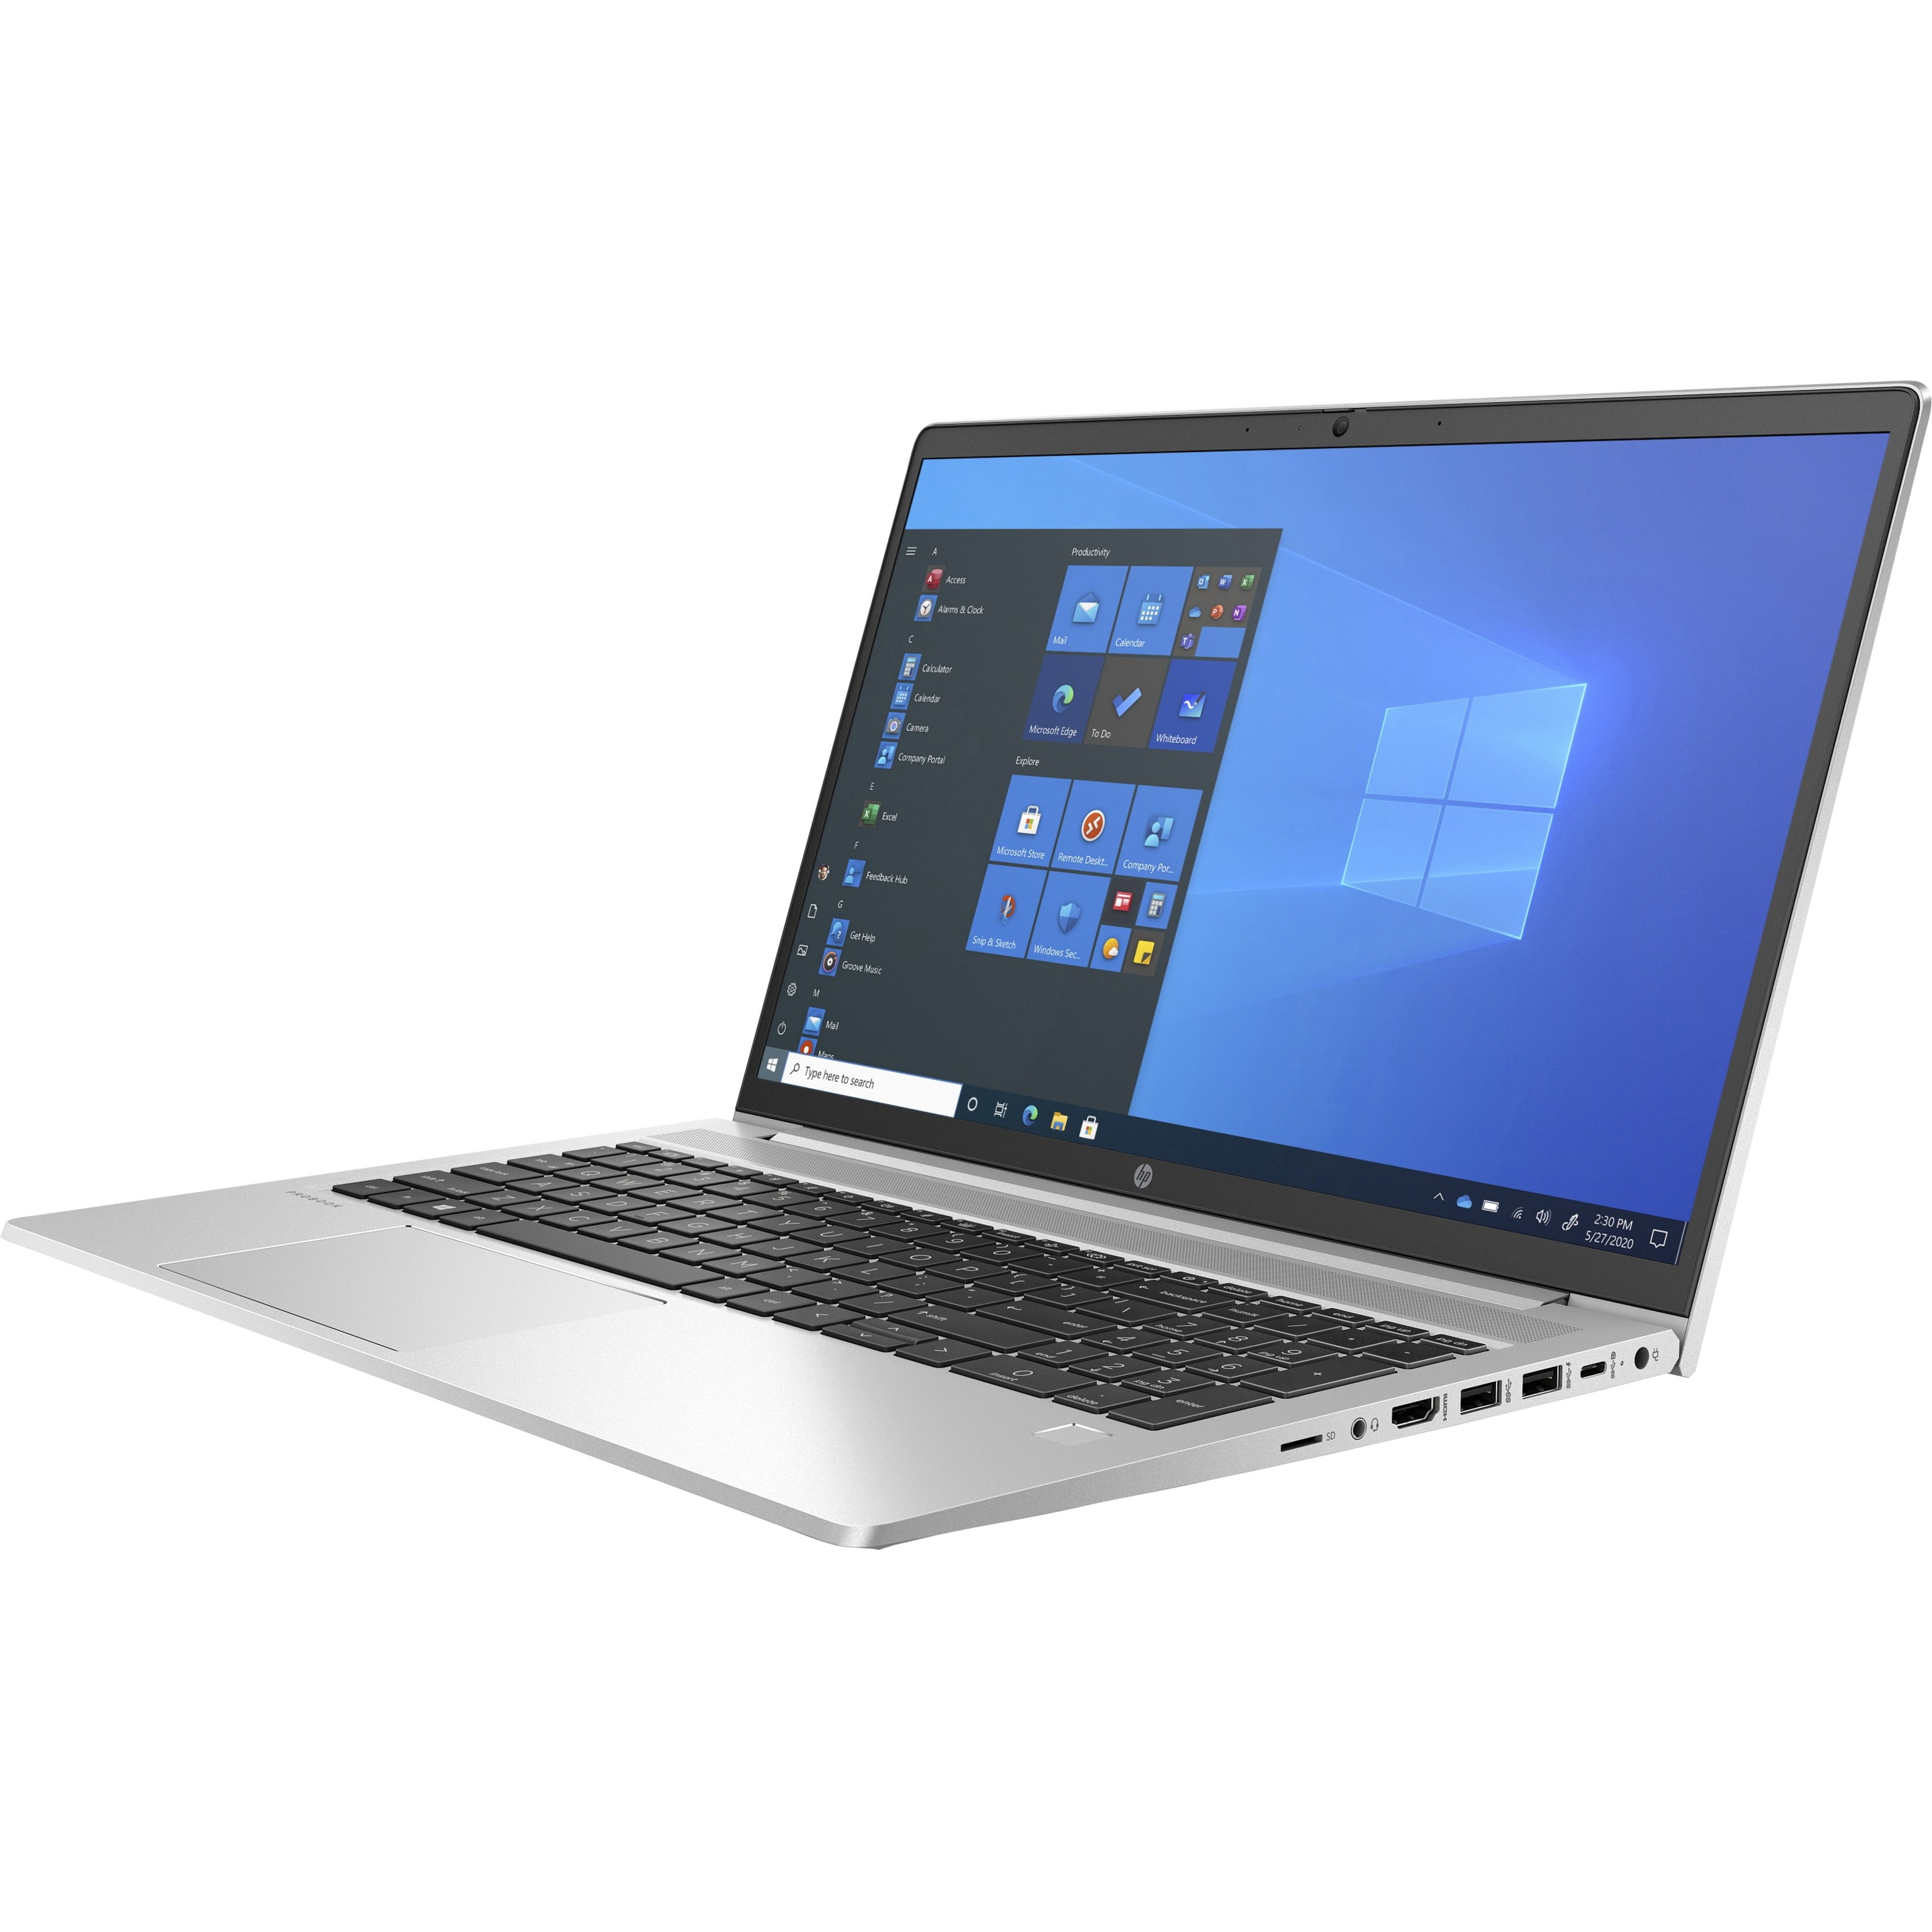 HP ProBook 450: Reliable Business Laptop